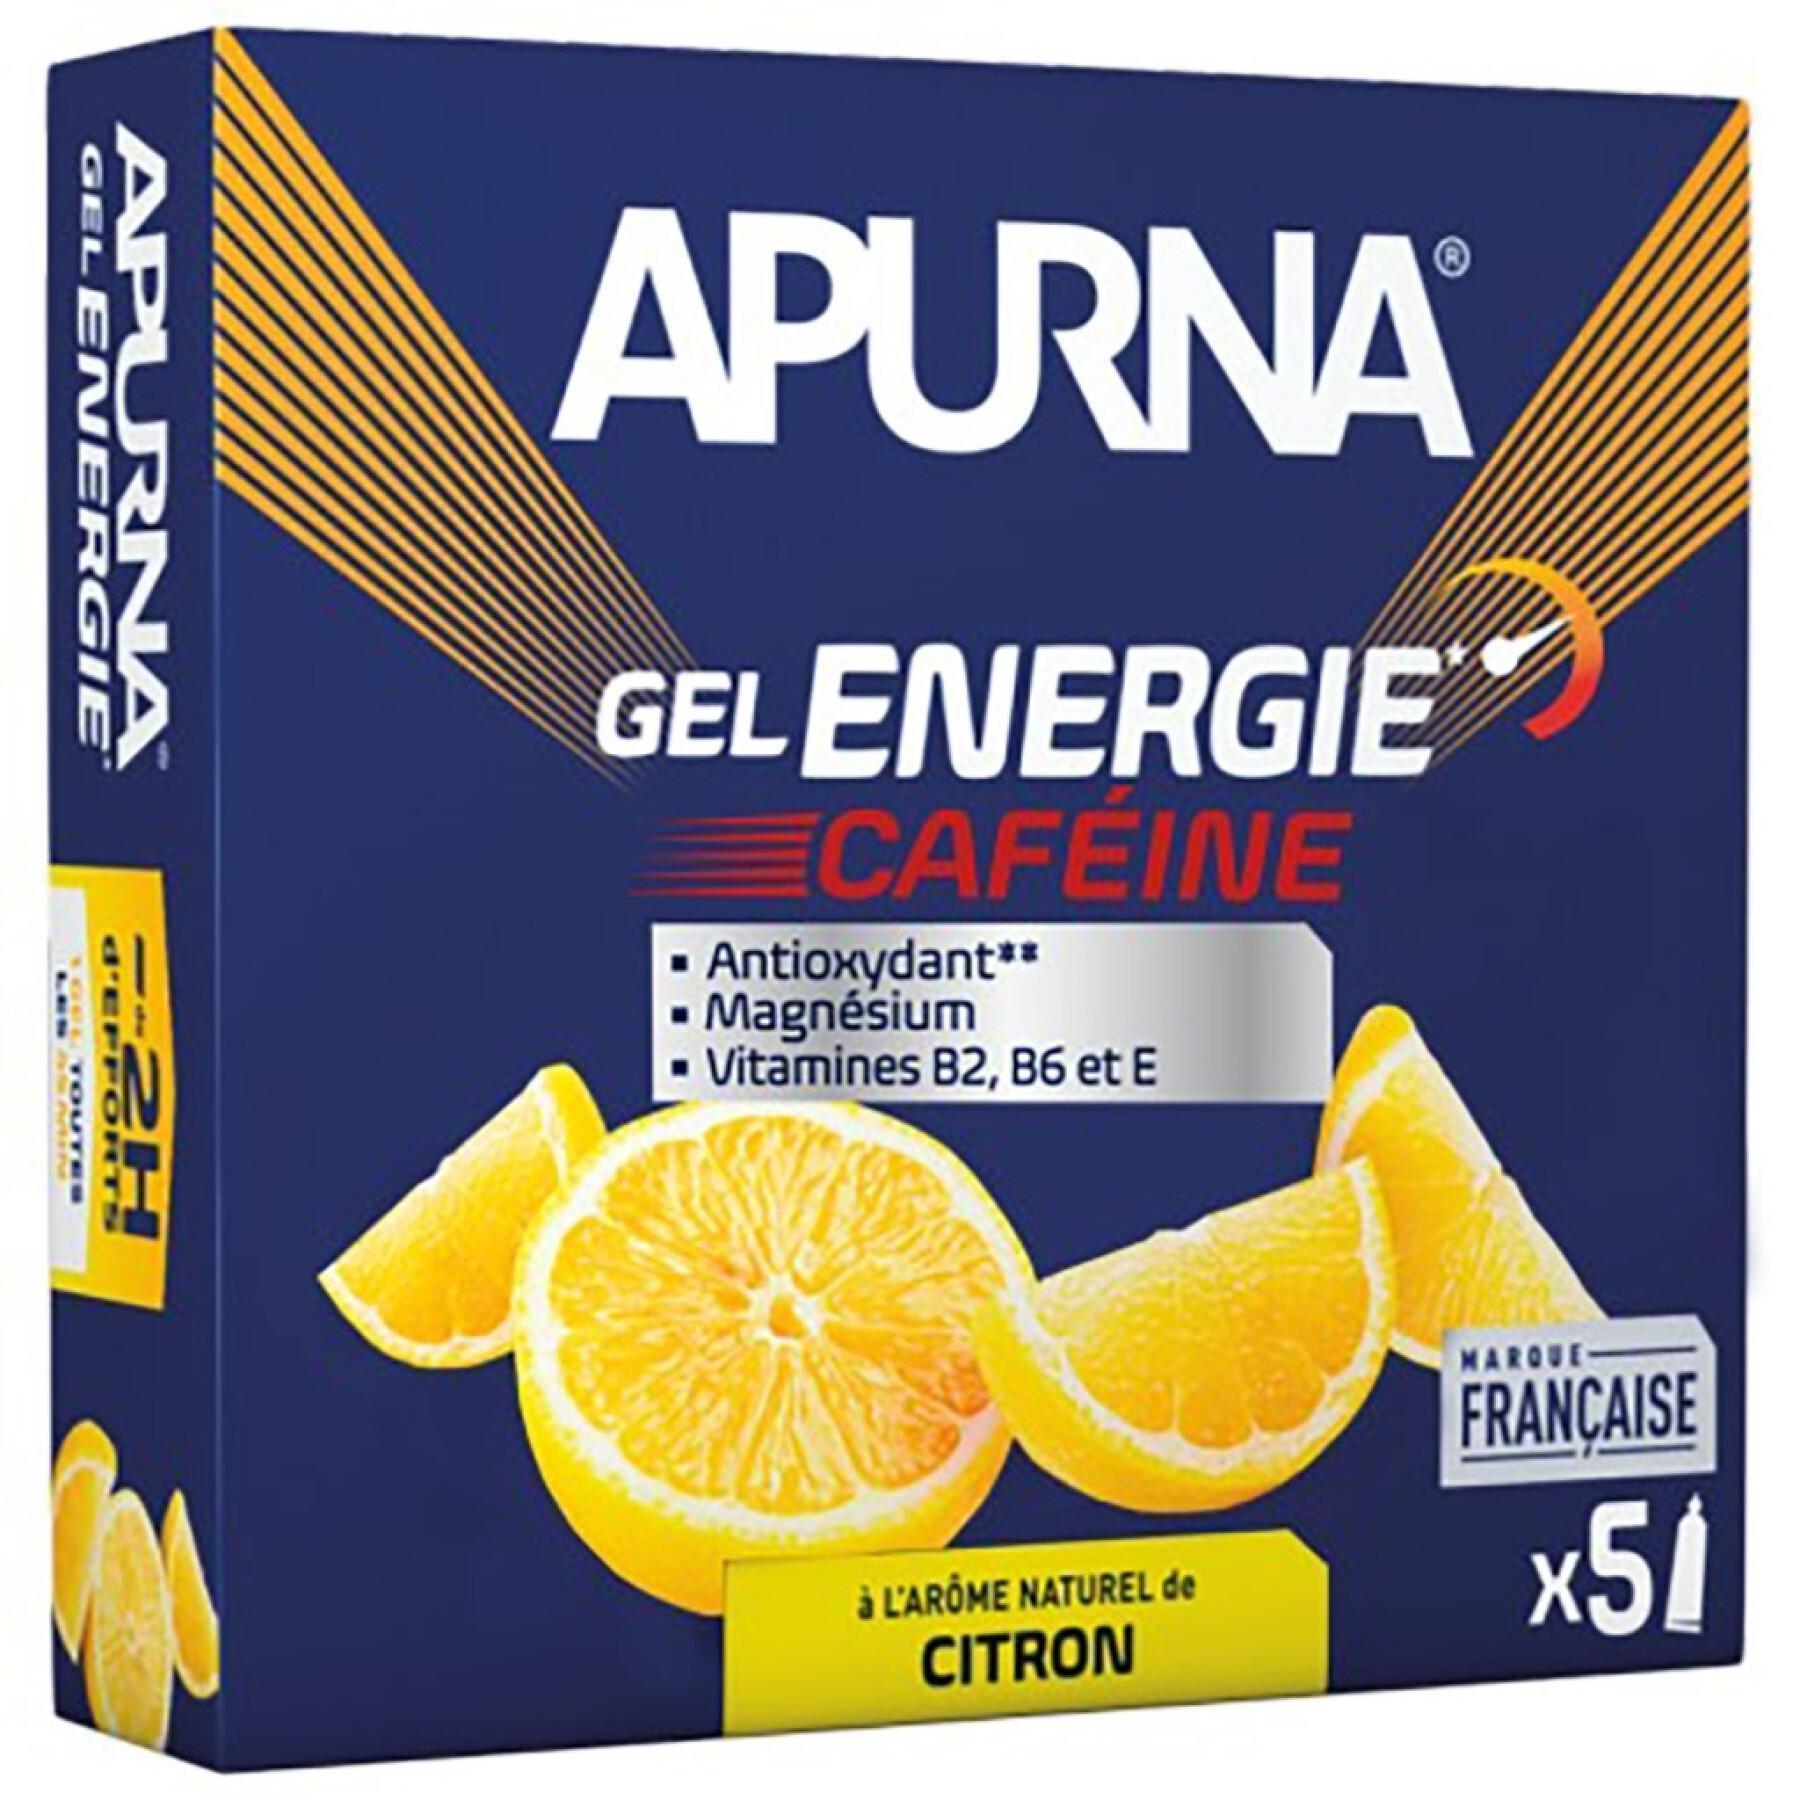 Lot de 5 gels énergétique citron caféine passage difficile dont 1 gel offert Apurna